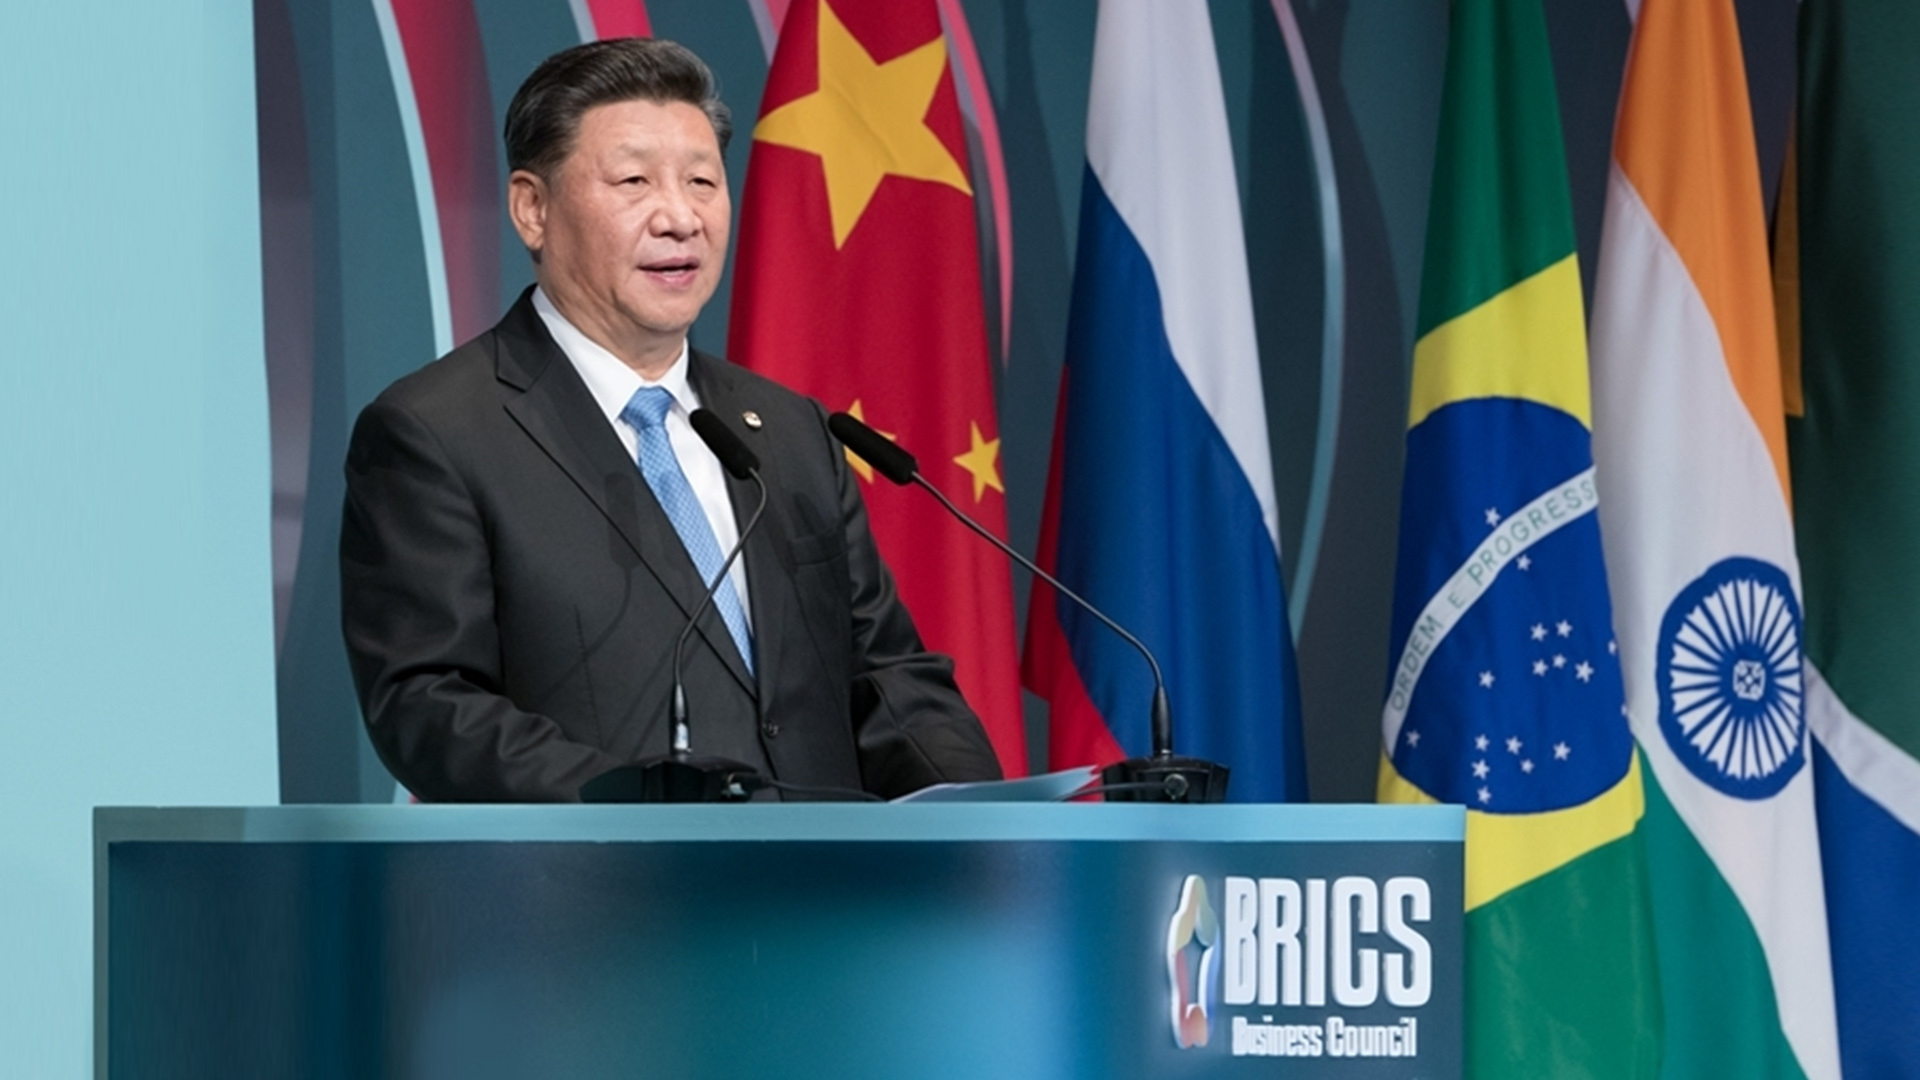 Il nuovo corso della globalizzazione teorizzata dal Presidente Xi Jinping dal vertice di Paesi BRICS di Johannesburg.